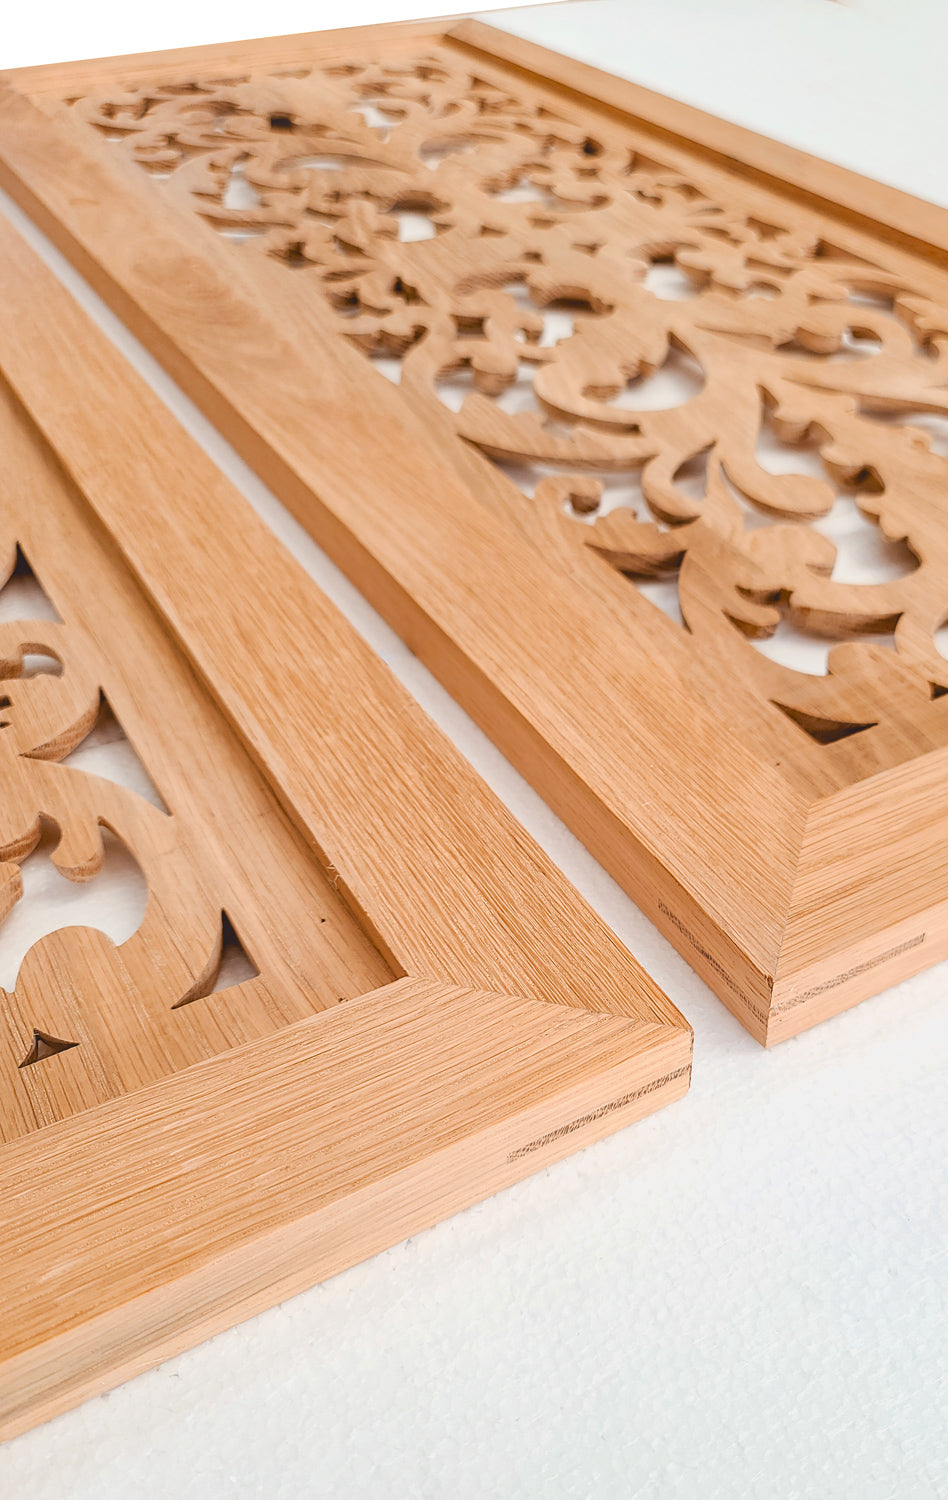 CBD-27 Wood Carved Look-through Cabinet Panel Door, Framed Cabinet Glass Door, 18"X42", Single